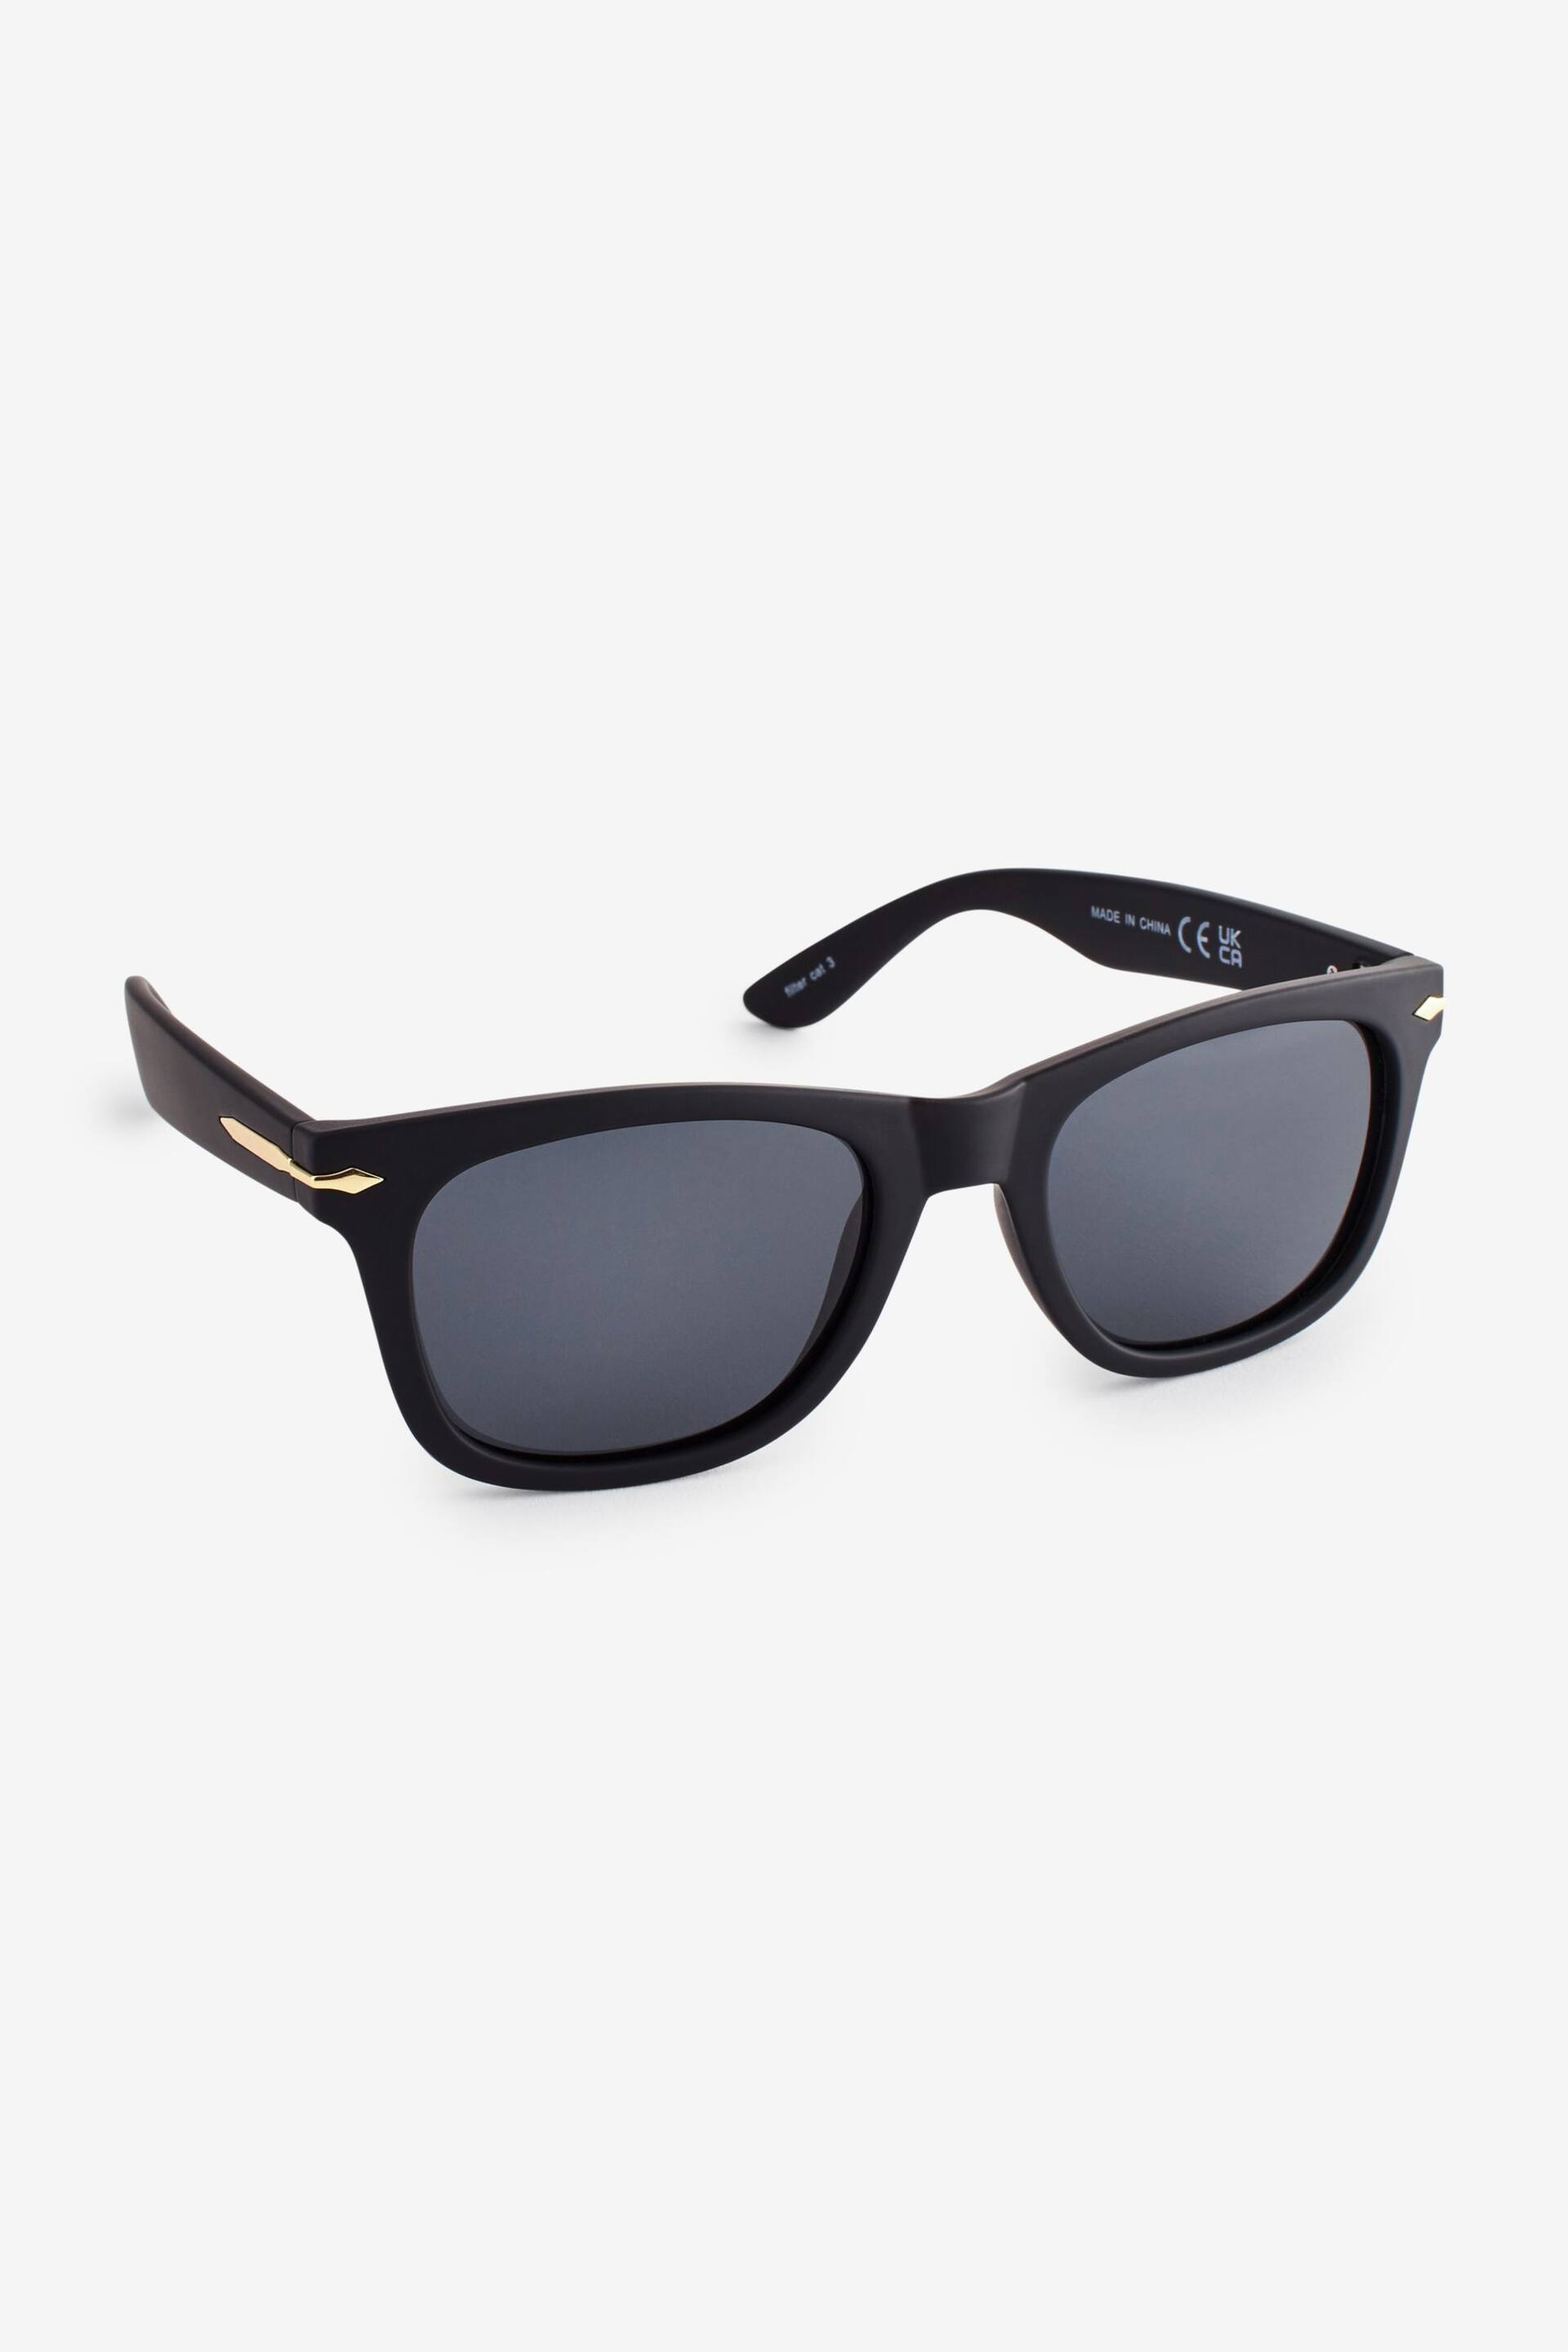 Black Square Polarised Sunglasses - Image 2 of 4